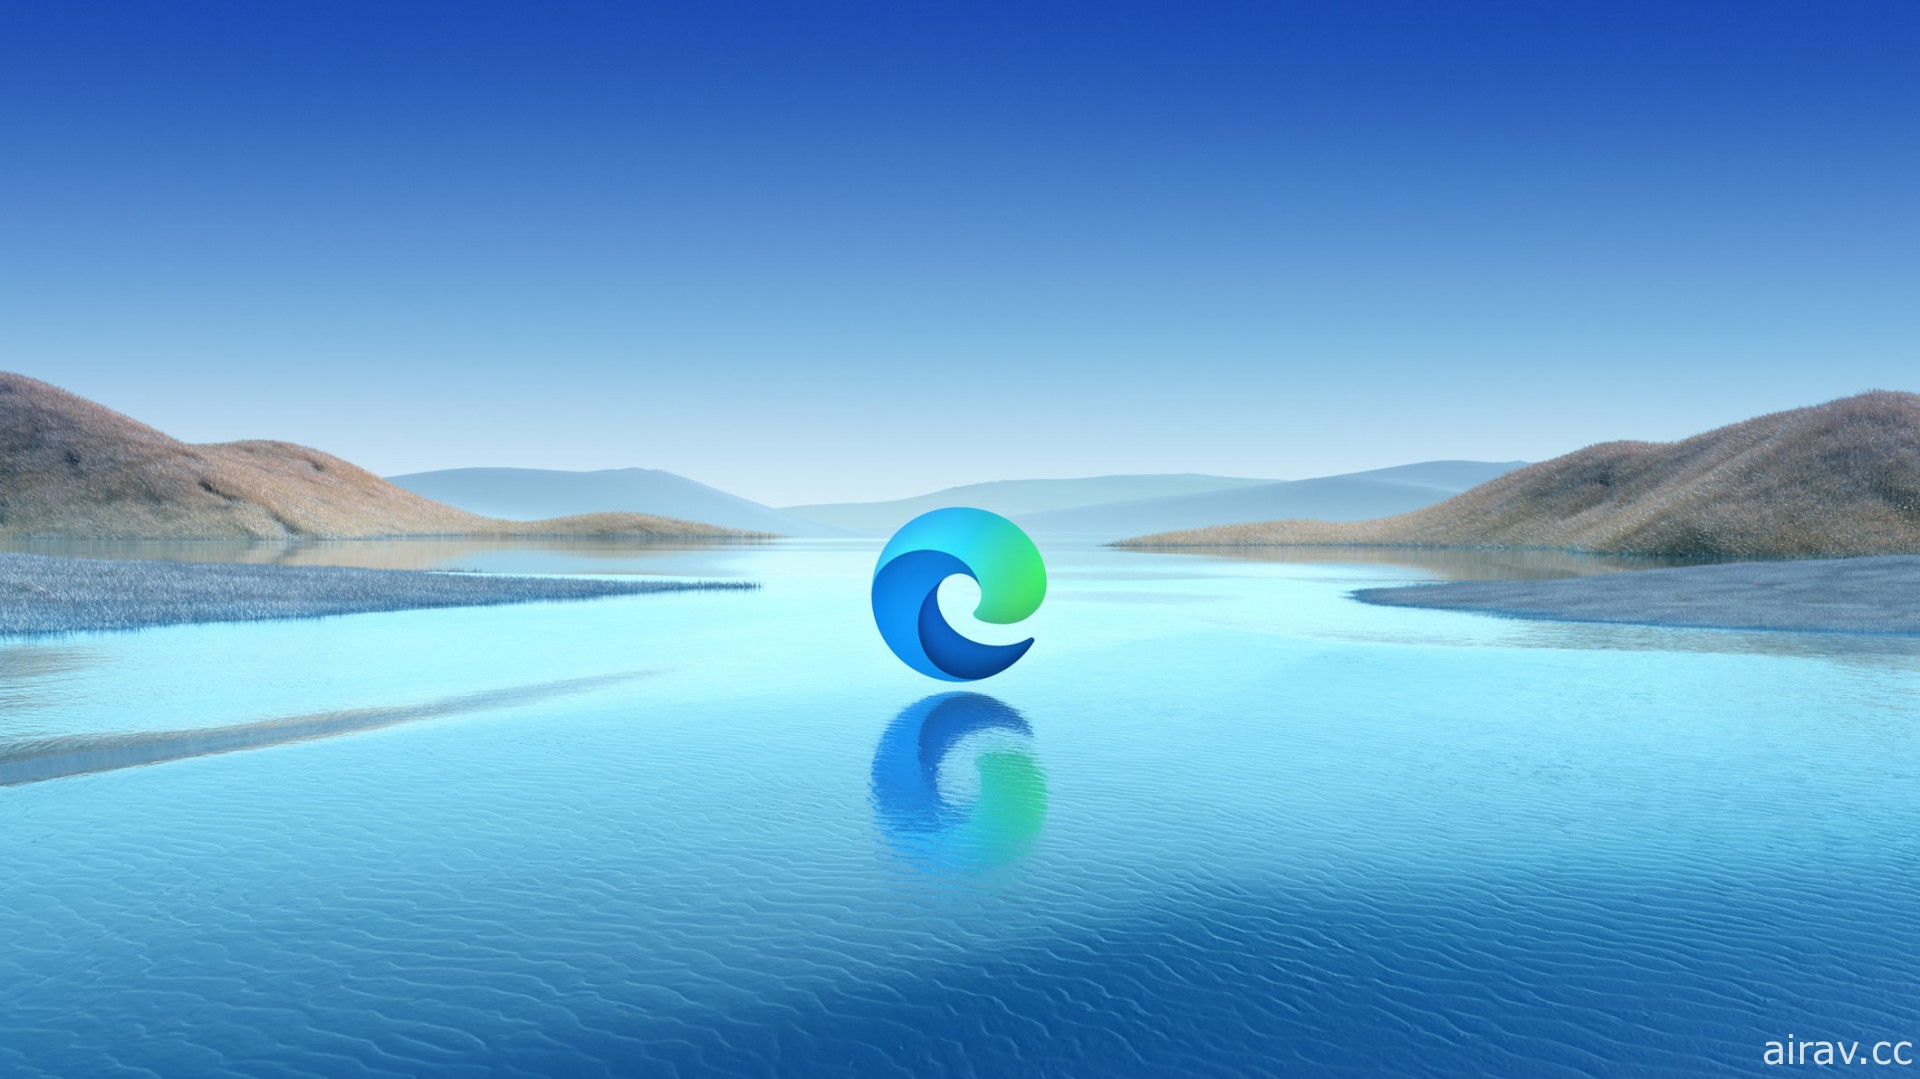 微軟旗下 Internet Explorer 瀏覽器將逐步走入歷史 預計 11 月底起陸續停止各服務支援